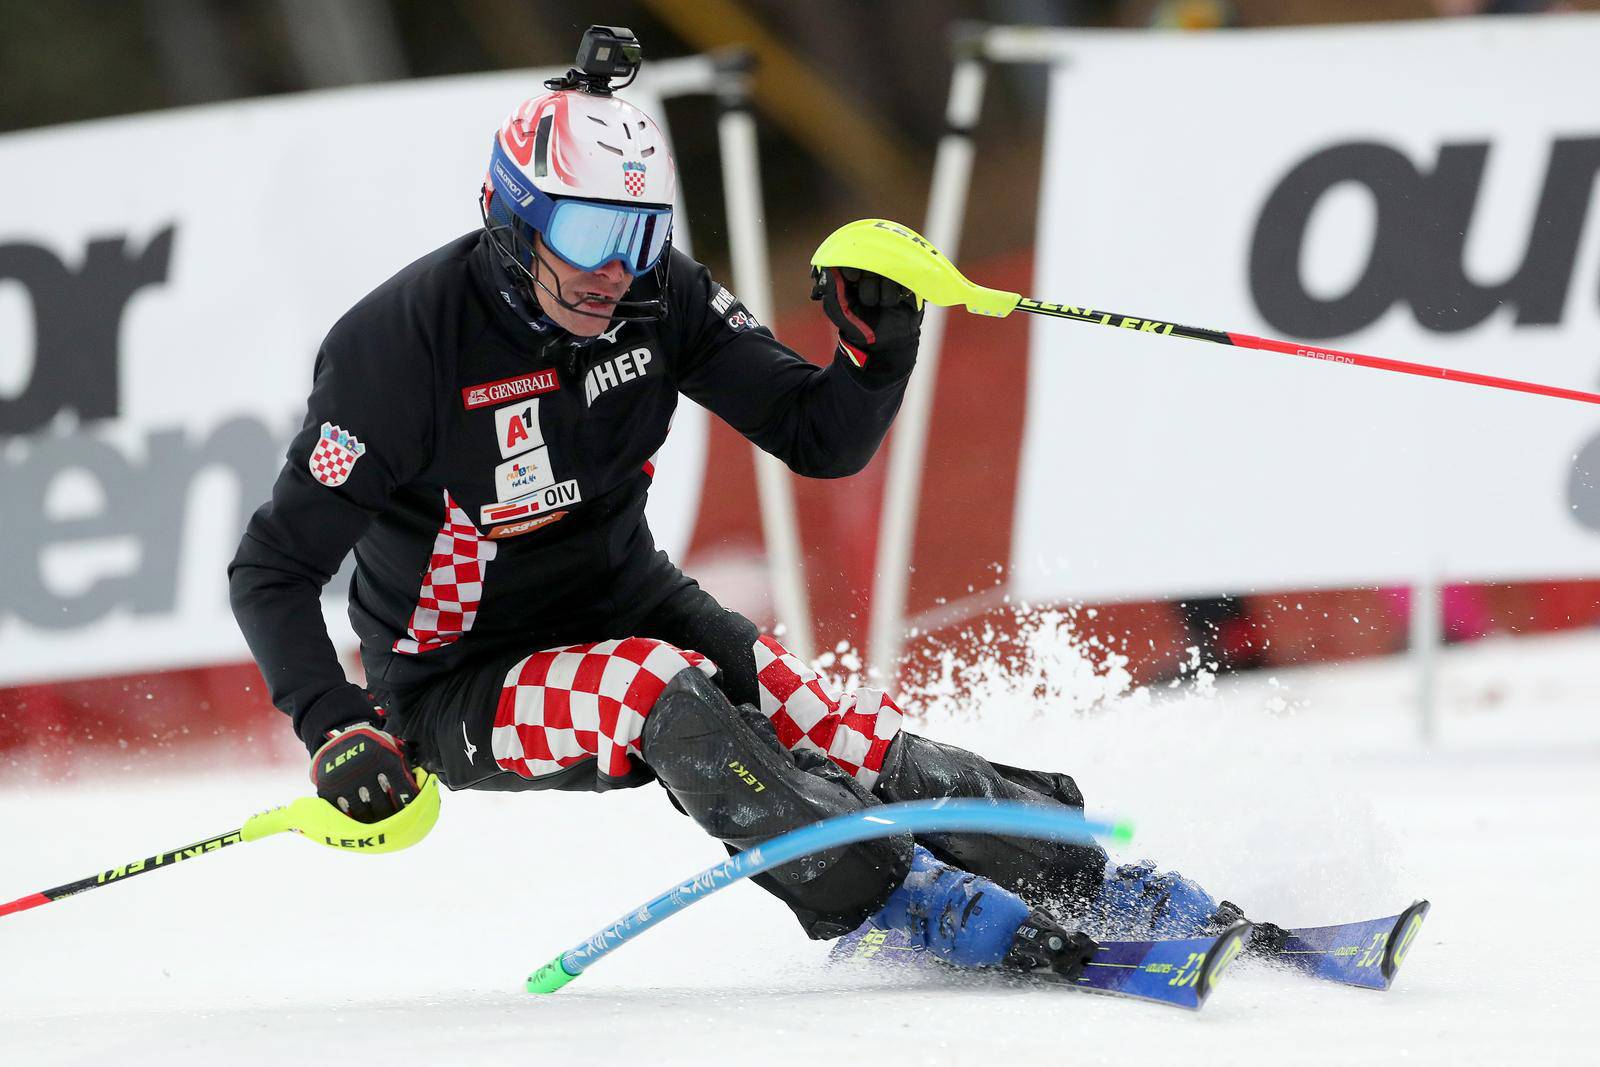 Zagreb: Druga vožnja ženskog slaloma Audi FIS Svjetskog skijaškog kupa